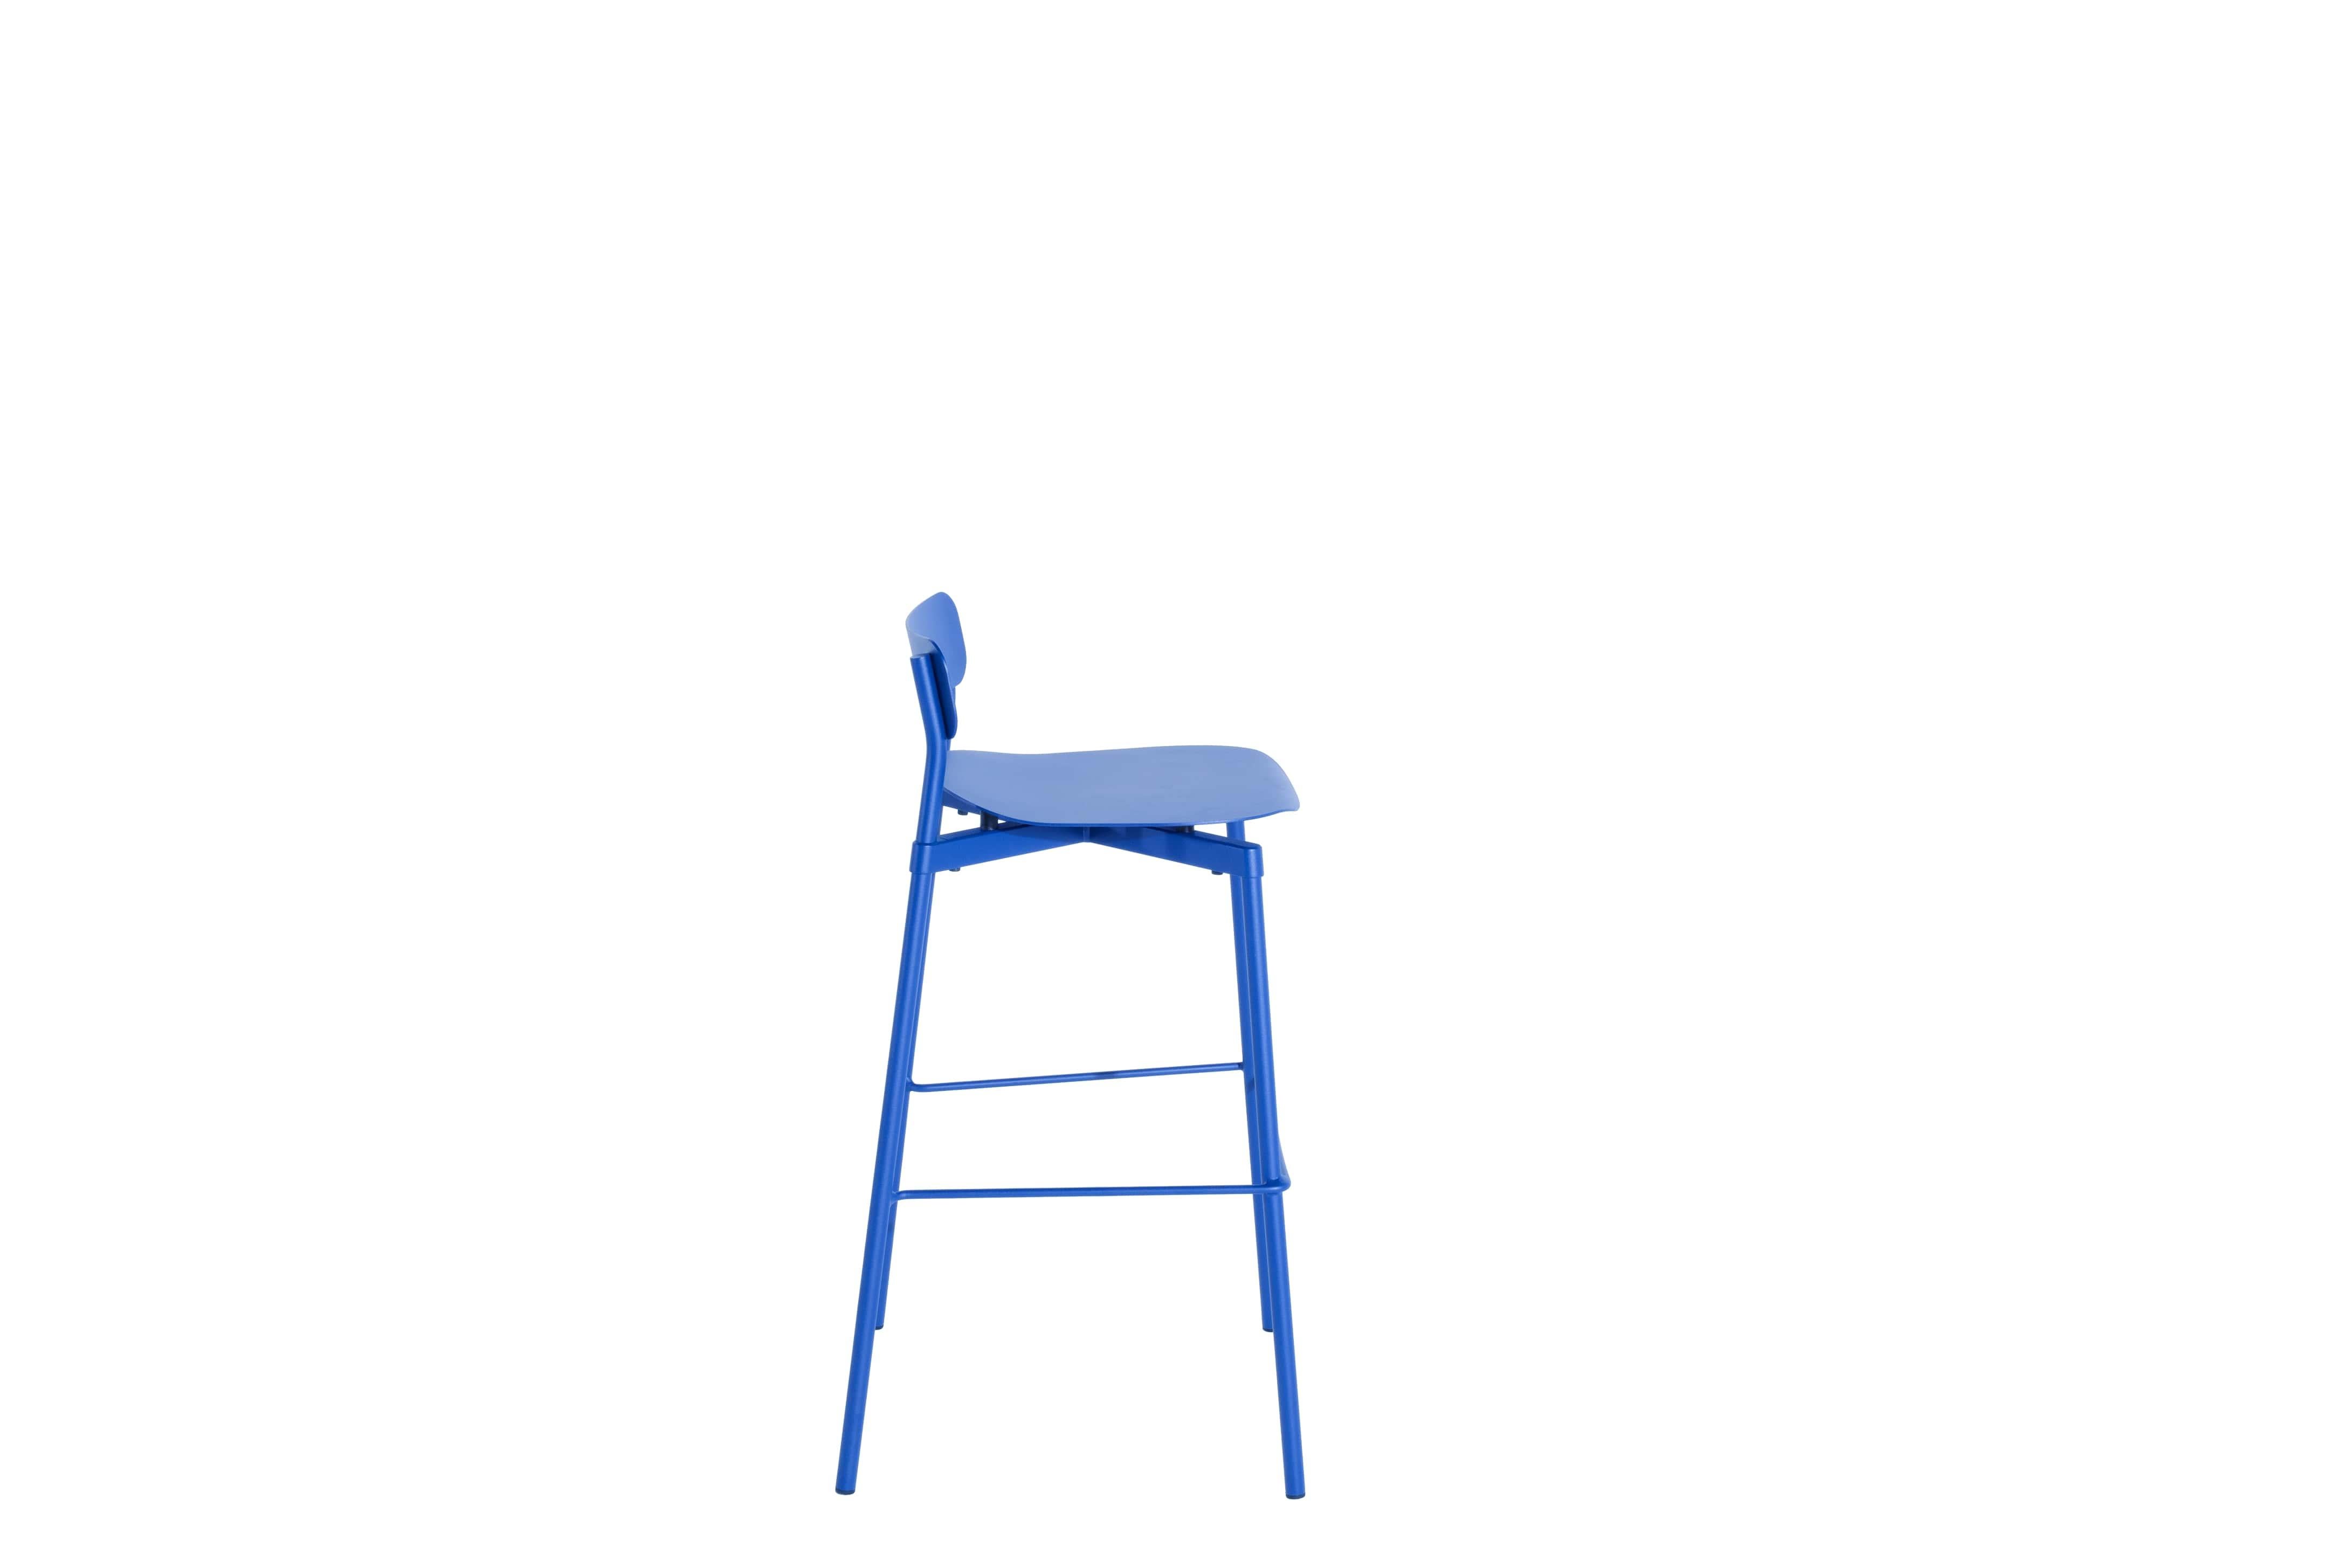 Petite Friture Large Fromme Tabouret de bar en aluminium bleu par Tom Chung, 2020

La collection S/One se distingue par sa ligne épurée et son design compact. Les absorbeurs placés sous les sièges leur confèrent une flexibilité souple et très